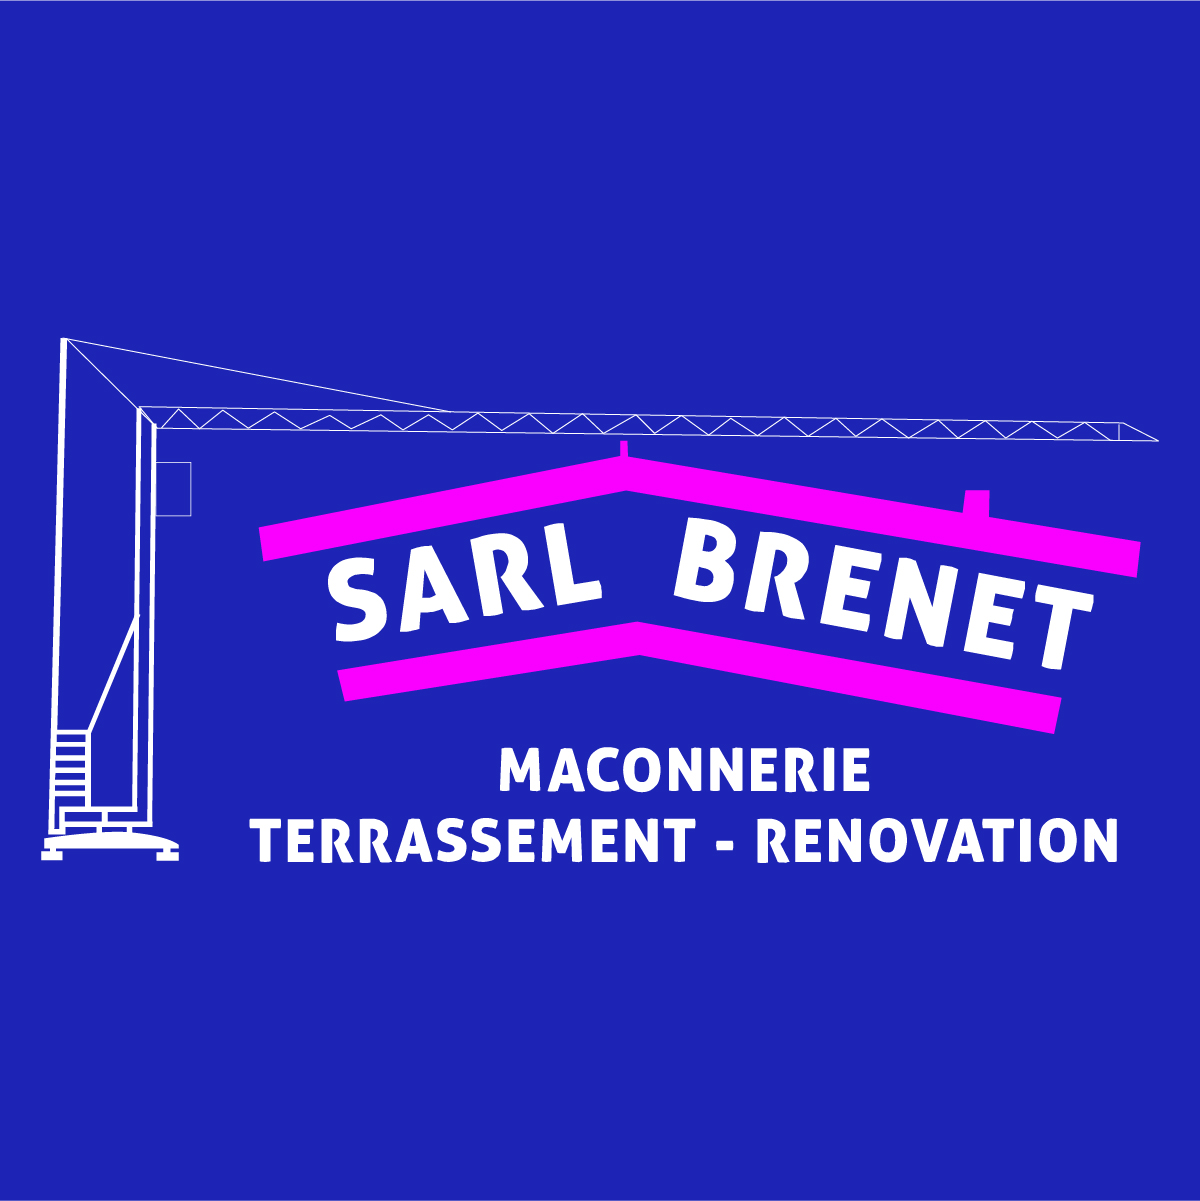 (c) Brenet-maconnerie.com